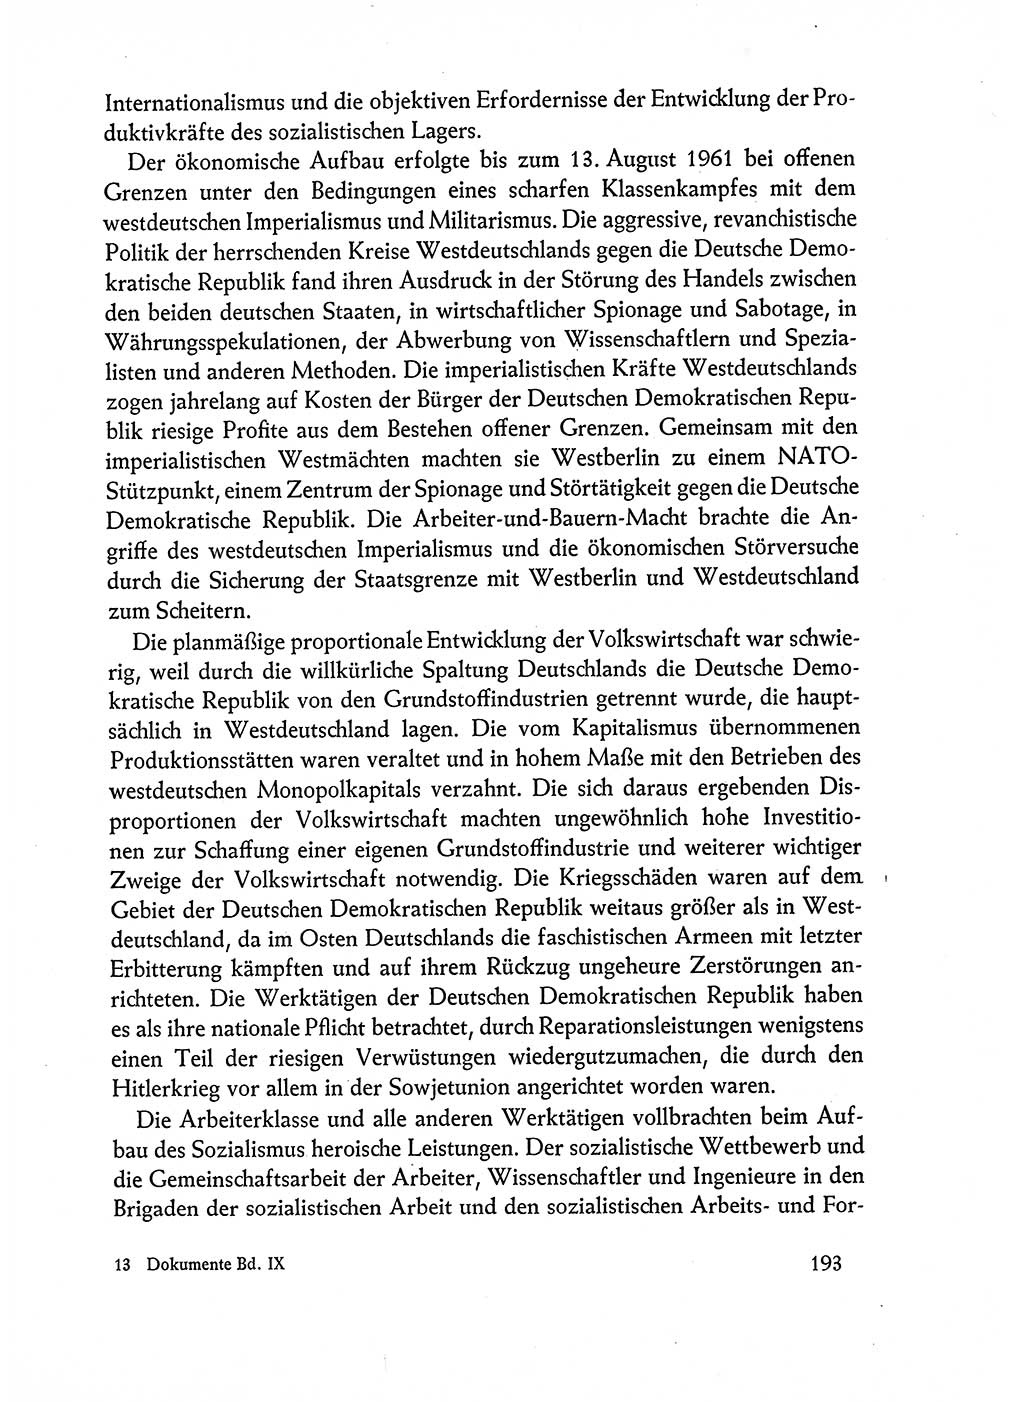 Dokumente der Sozialistischen Einheitspartei Deutschlands (SED) [Deutsche Demokratische Republik (DDR)] 1962-1963, Seite 193 (Dok. SED DDR 1962-1963, S. 193)